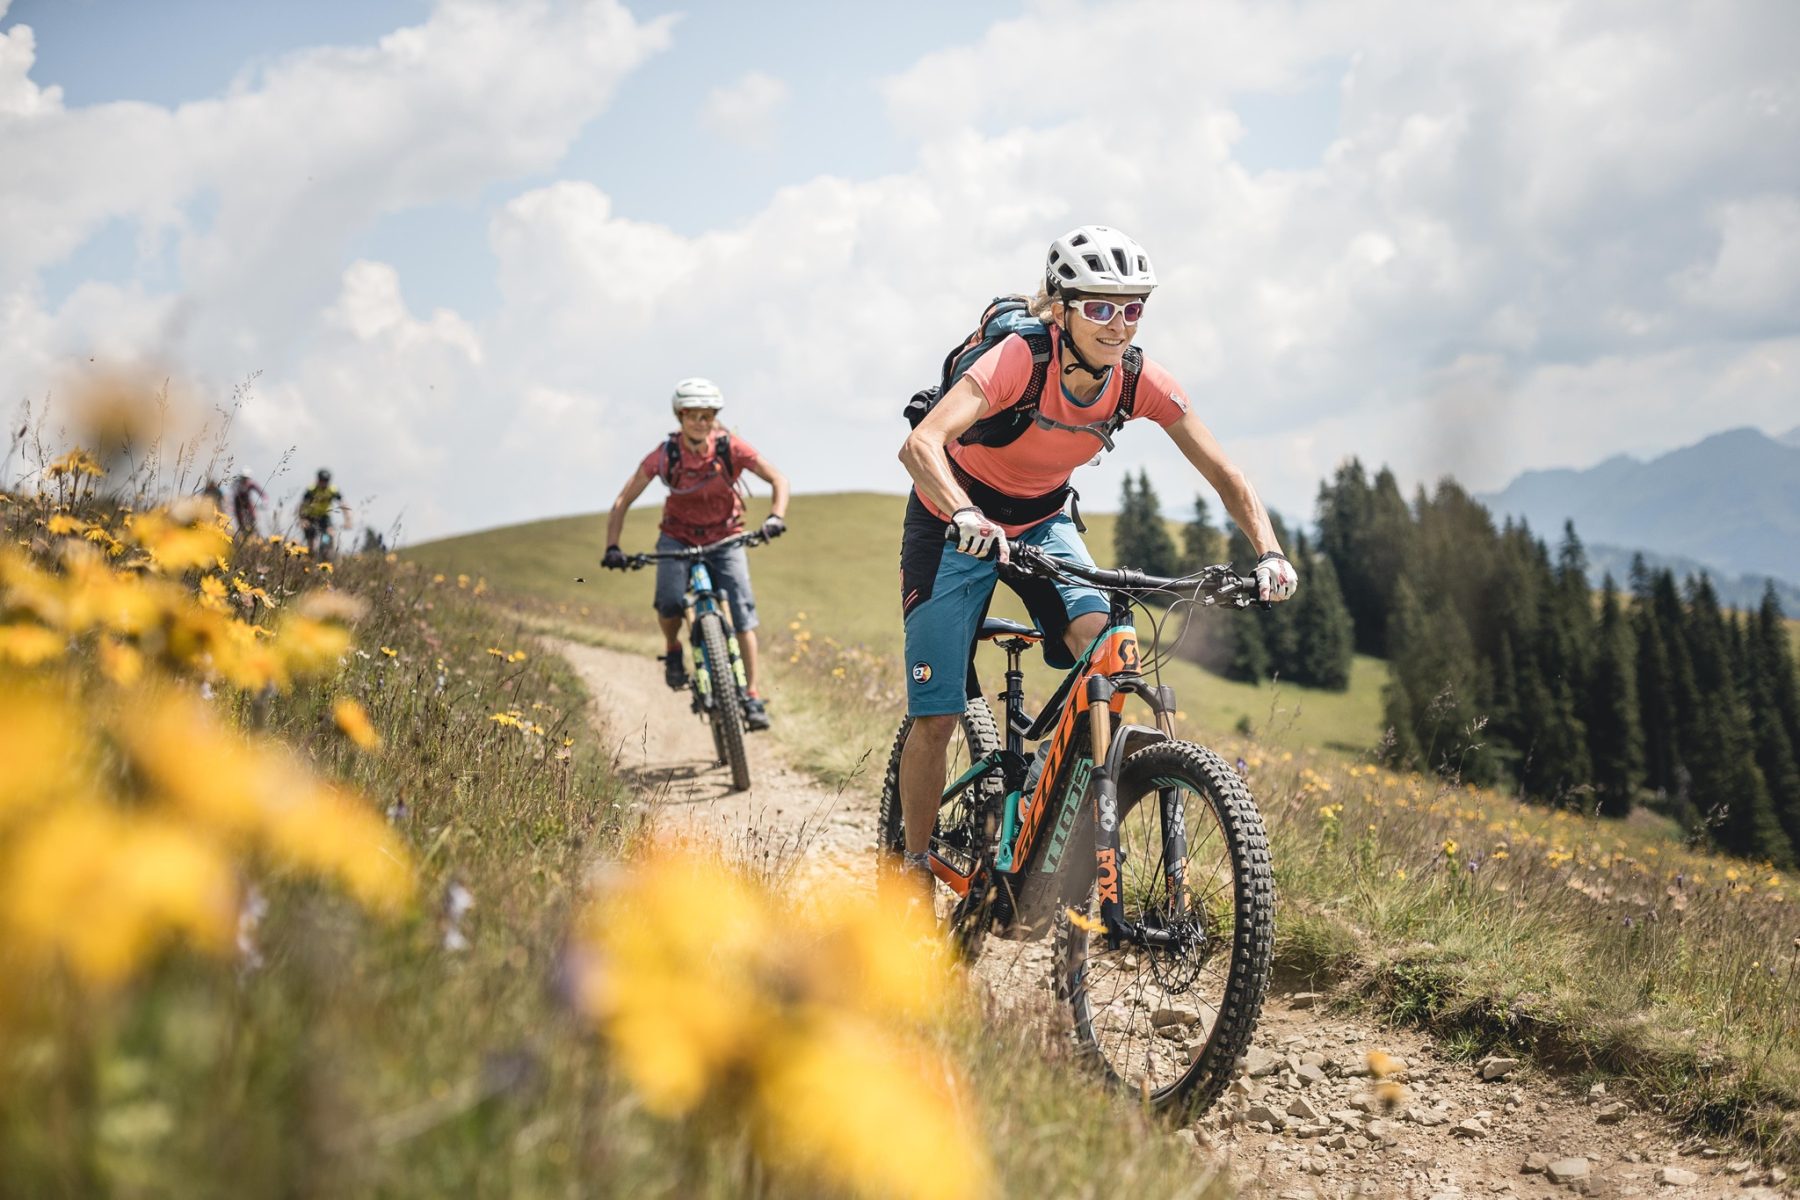 In Gstaad barst het van de leuke outdooractiviteiten, zoals mountainbiken.